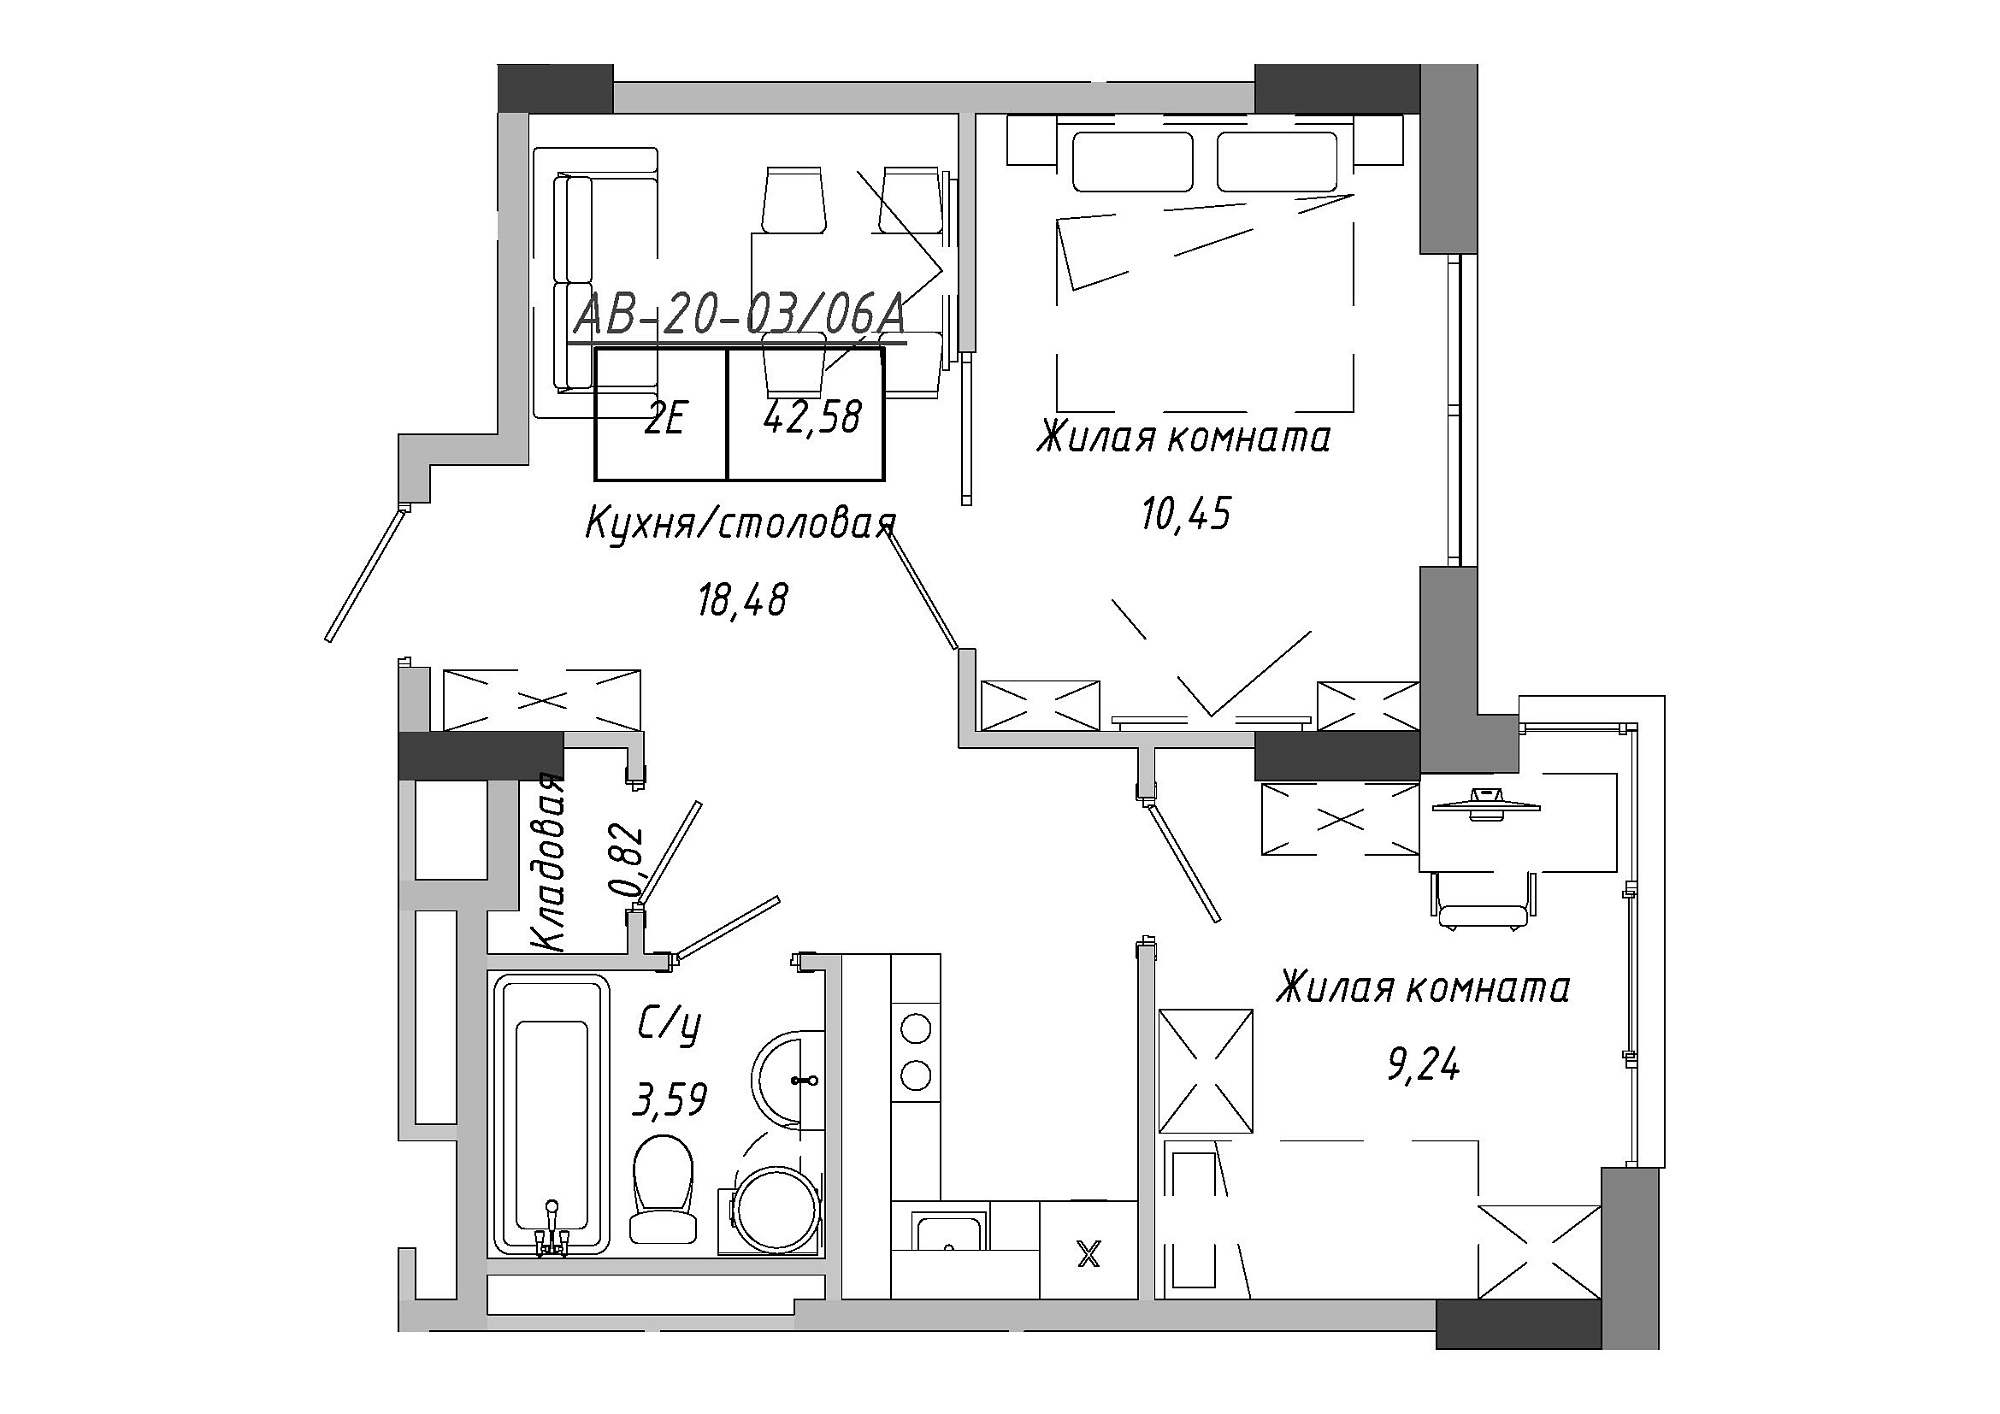 Планування 2-к квартира площею 42.58м2, AB-20-03/0006а.